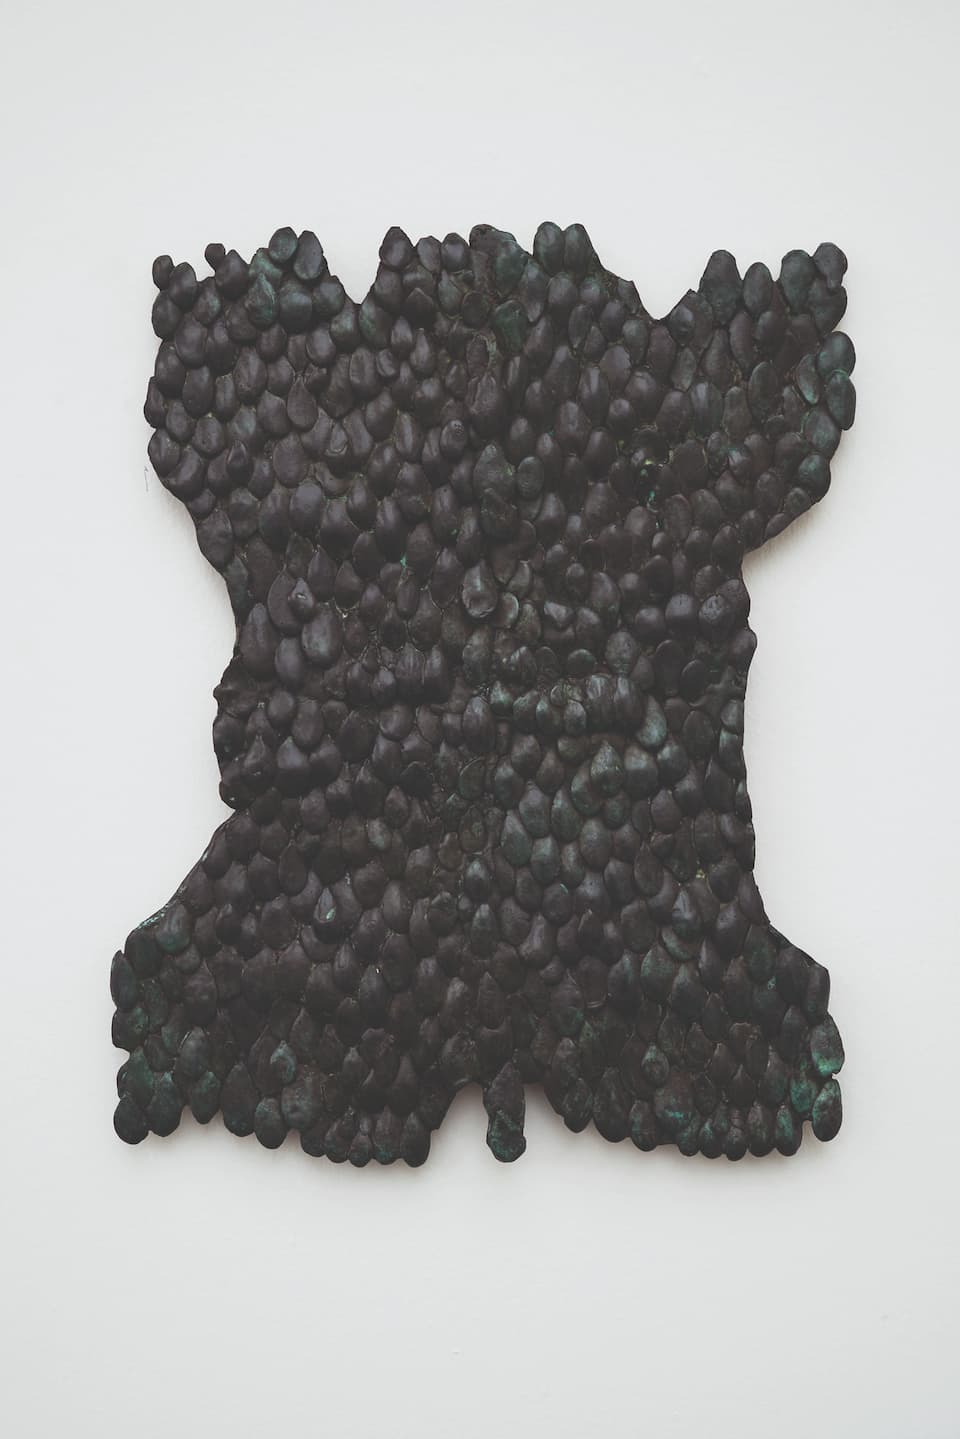 Lucy Skaer, Pelt, 2019. Bronze, 59 x 39 x 4,5 cm, 2/3. Achat à la Galerie Peter Freeman, Inc., Paris. Collection Frac Bretagne. © droits réservés